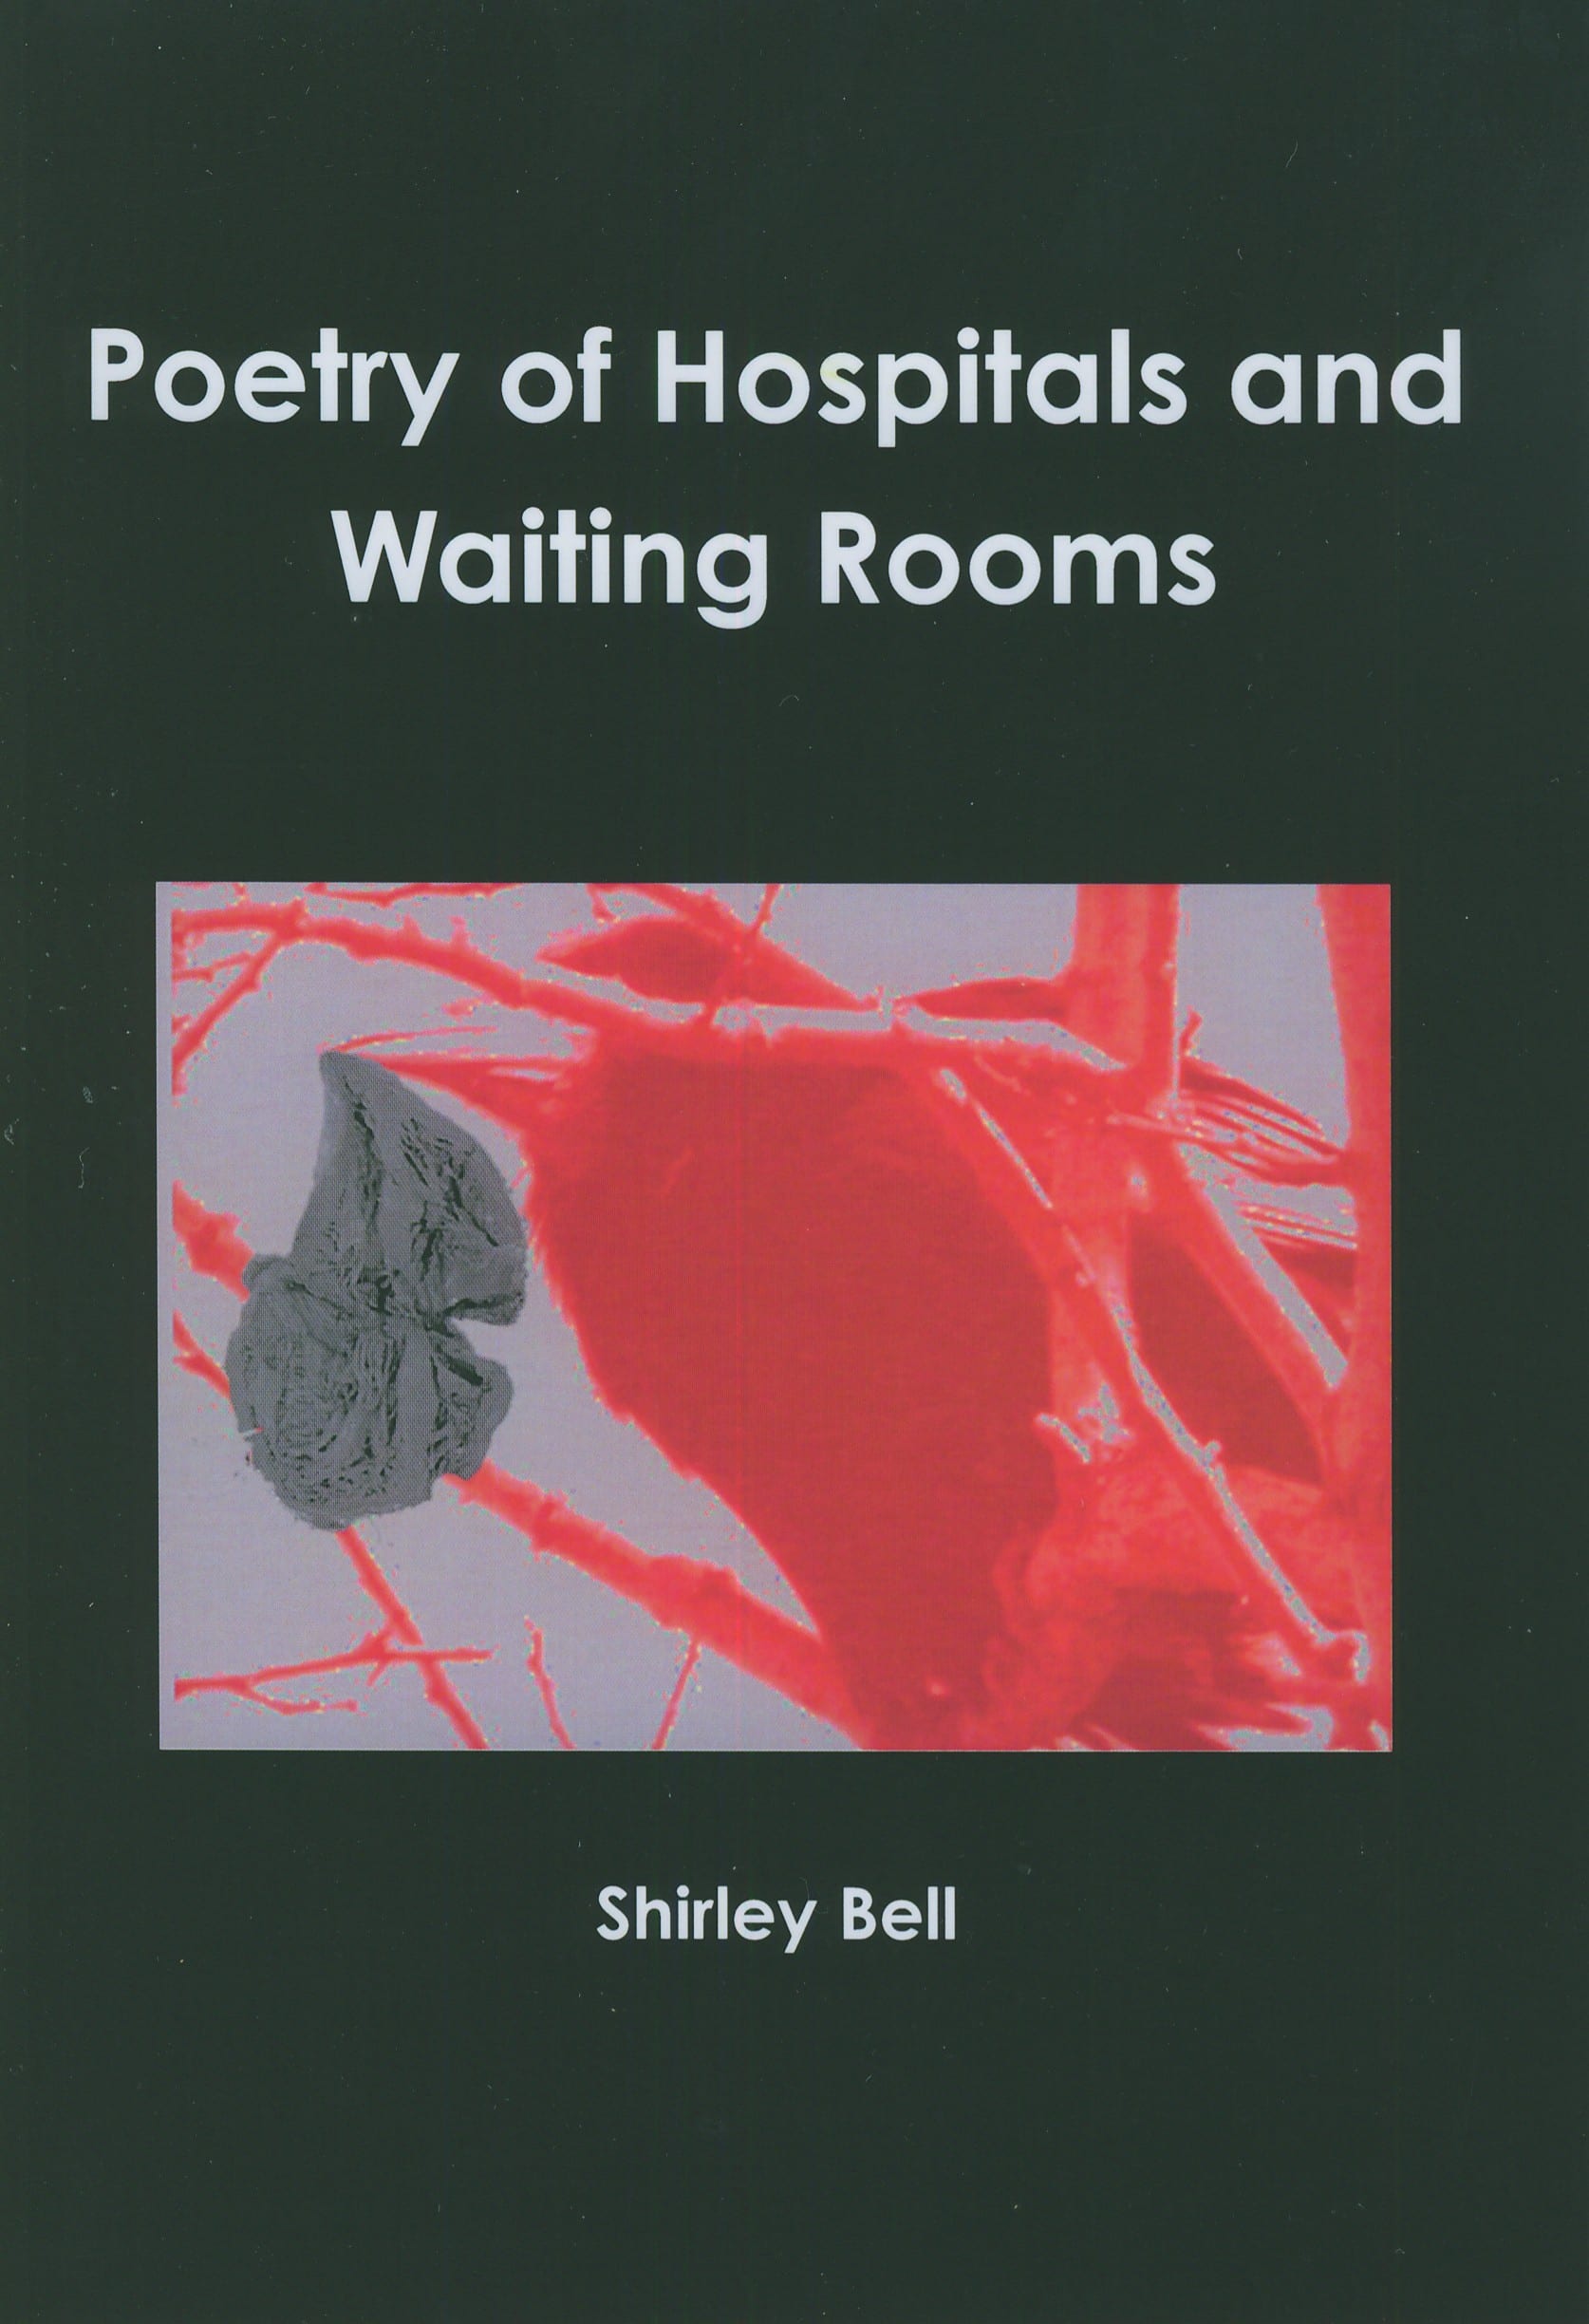 poemsofwaitingrooms